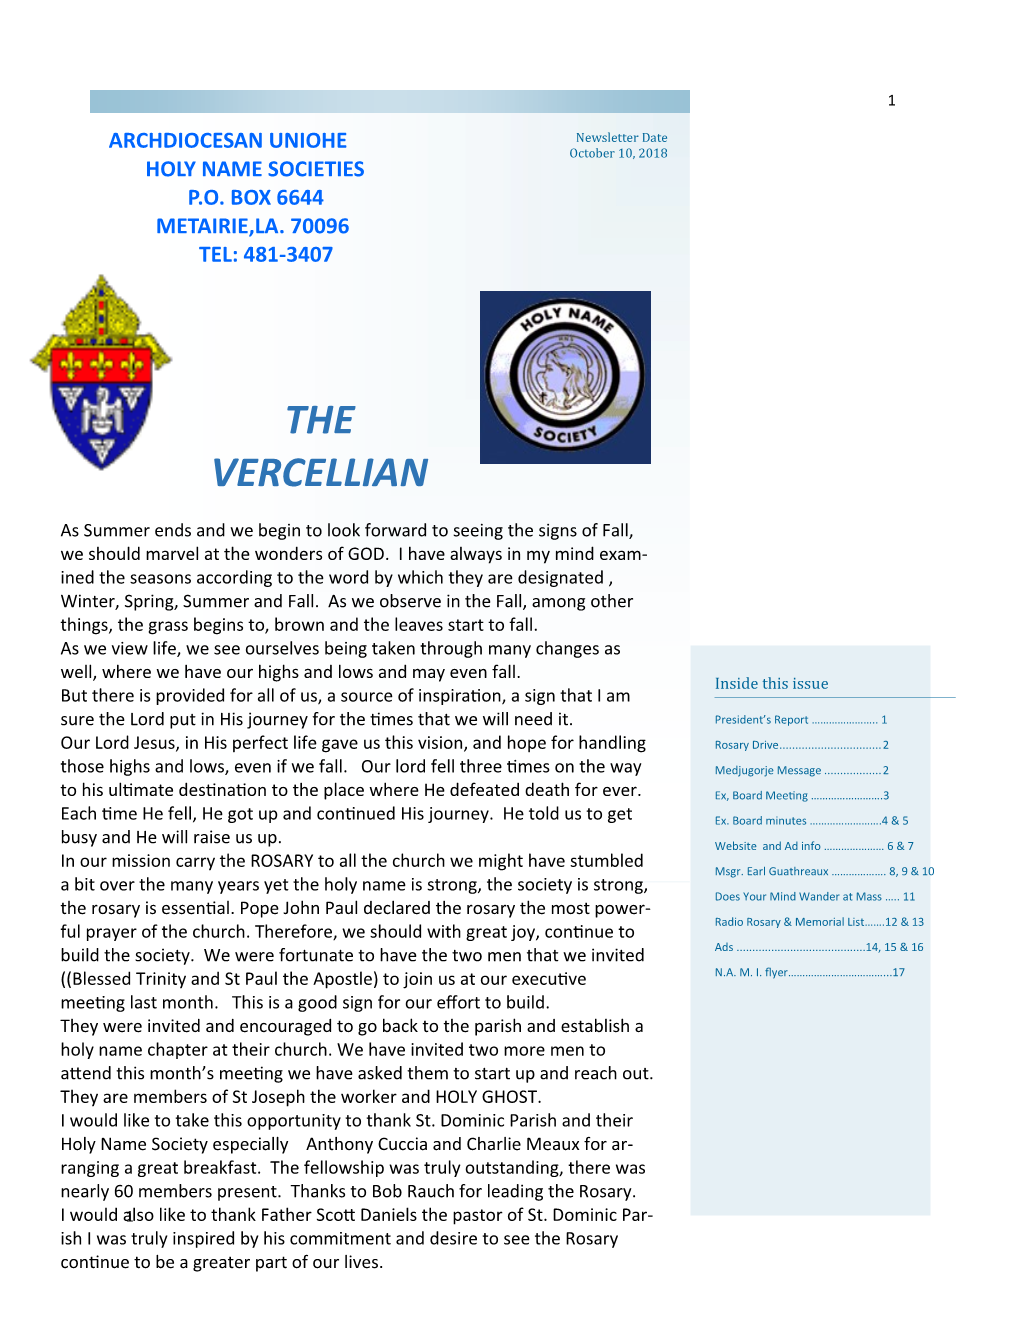 The Vercellian